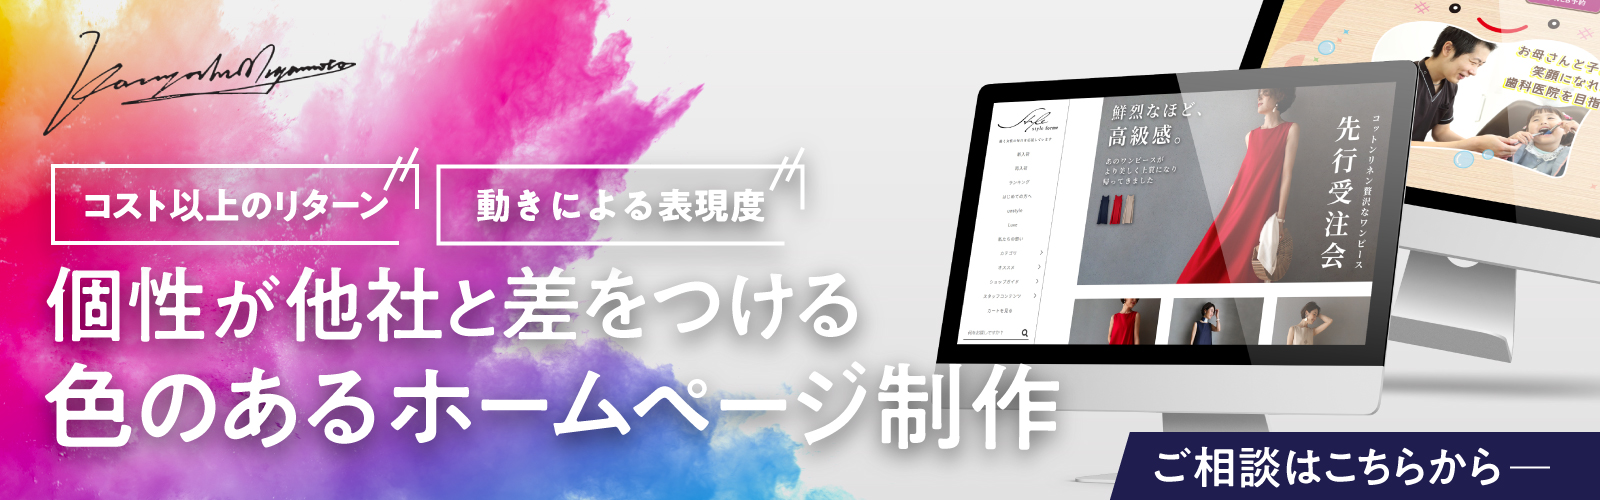 【名古屋のホームページ制作会社Miyamotoさま】ホームページ制作お問い合わせのバナーデザイン